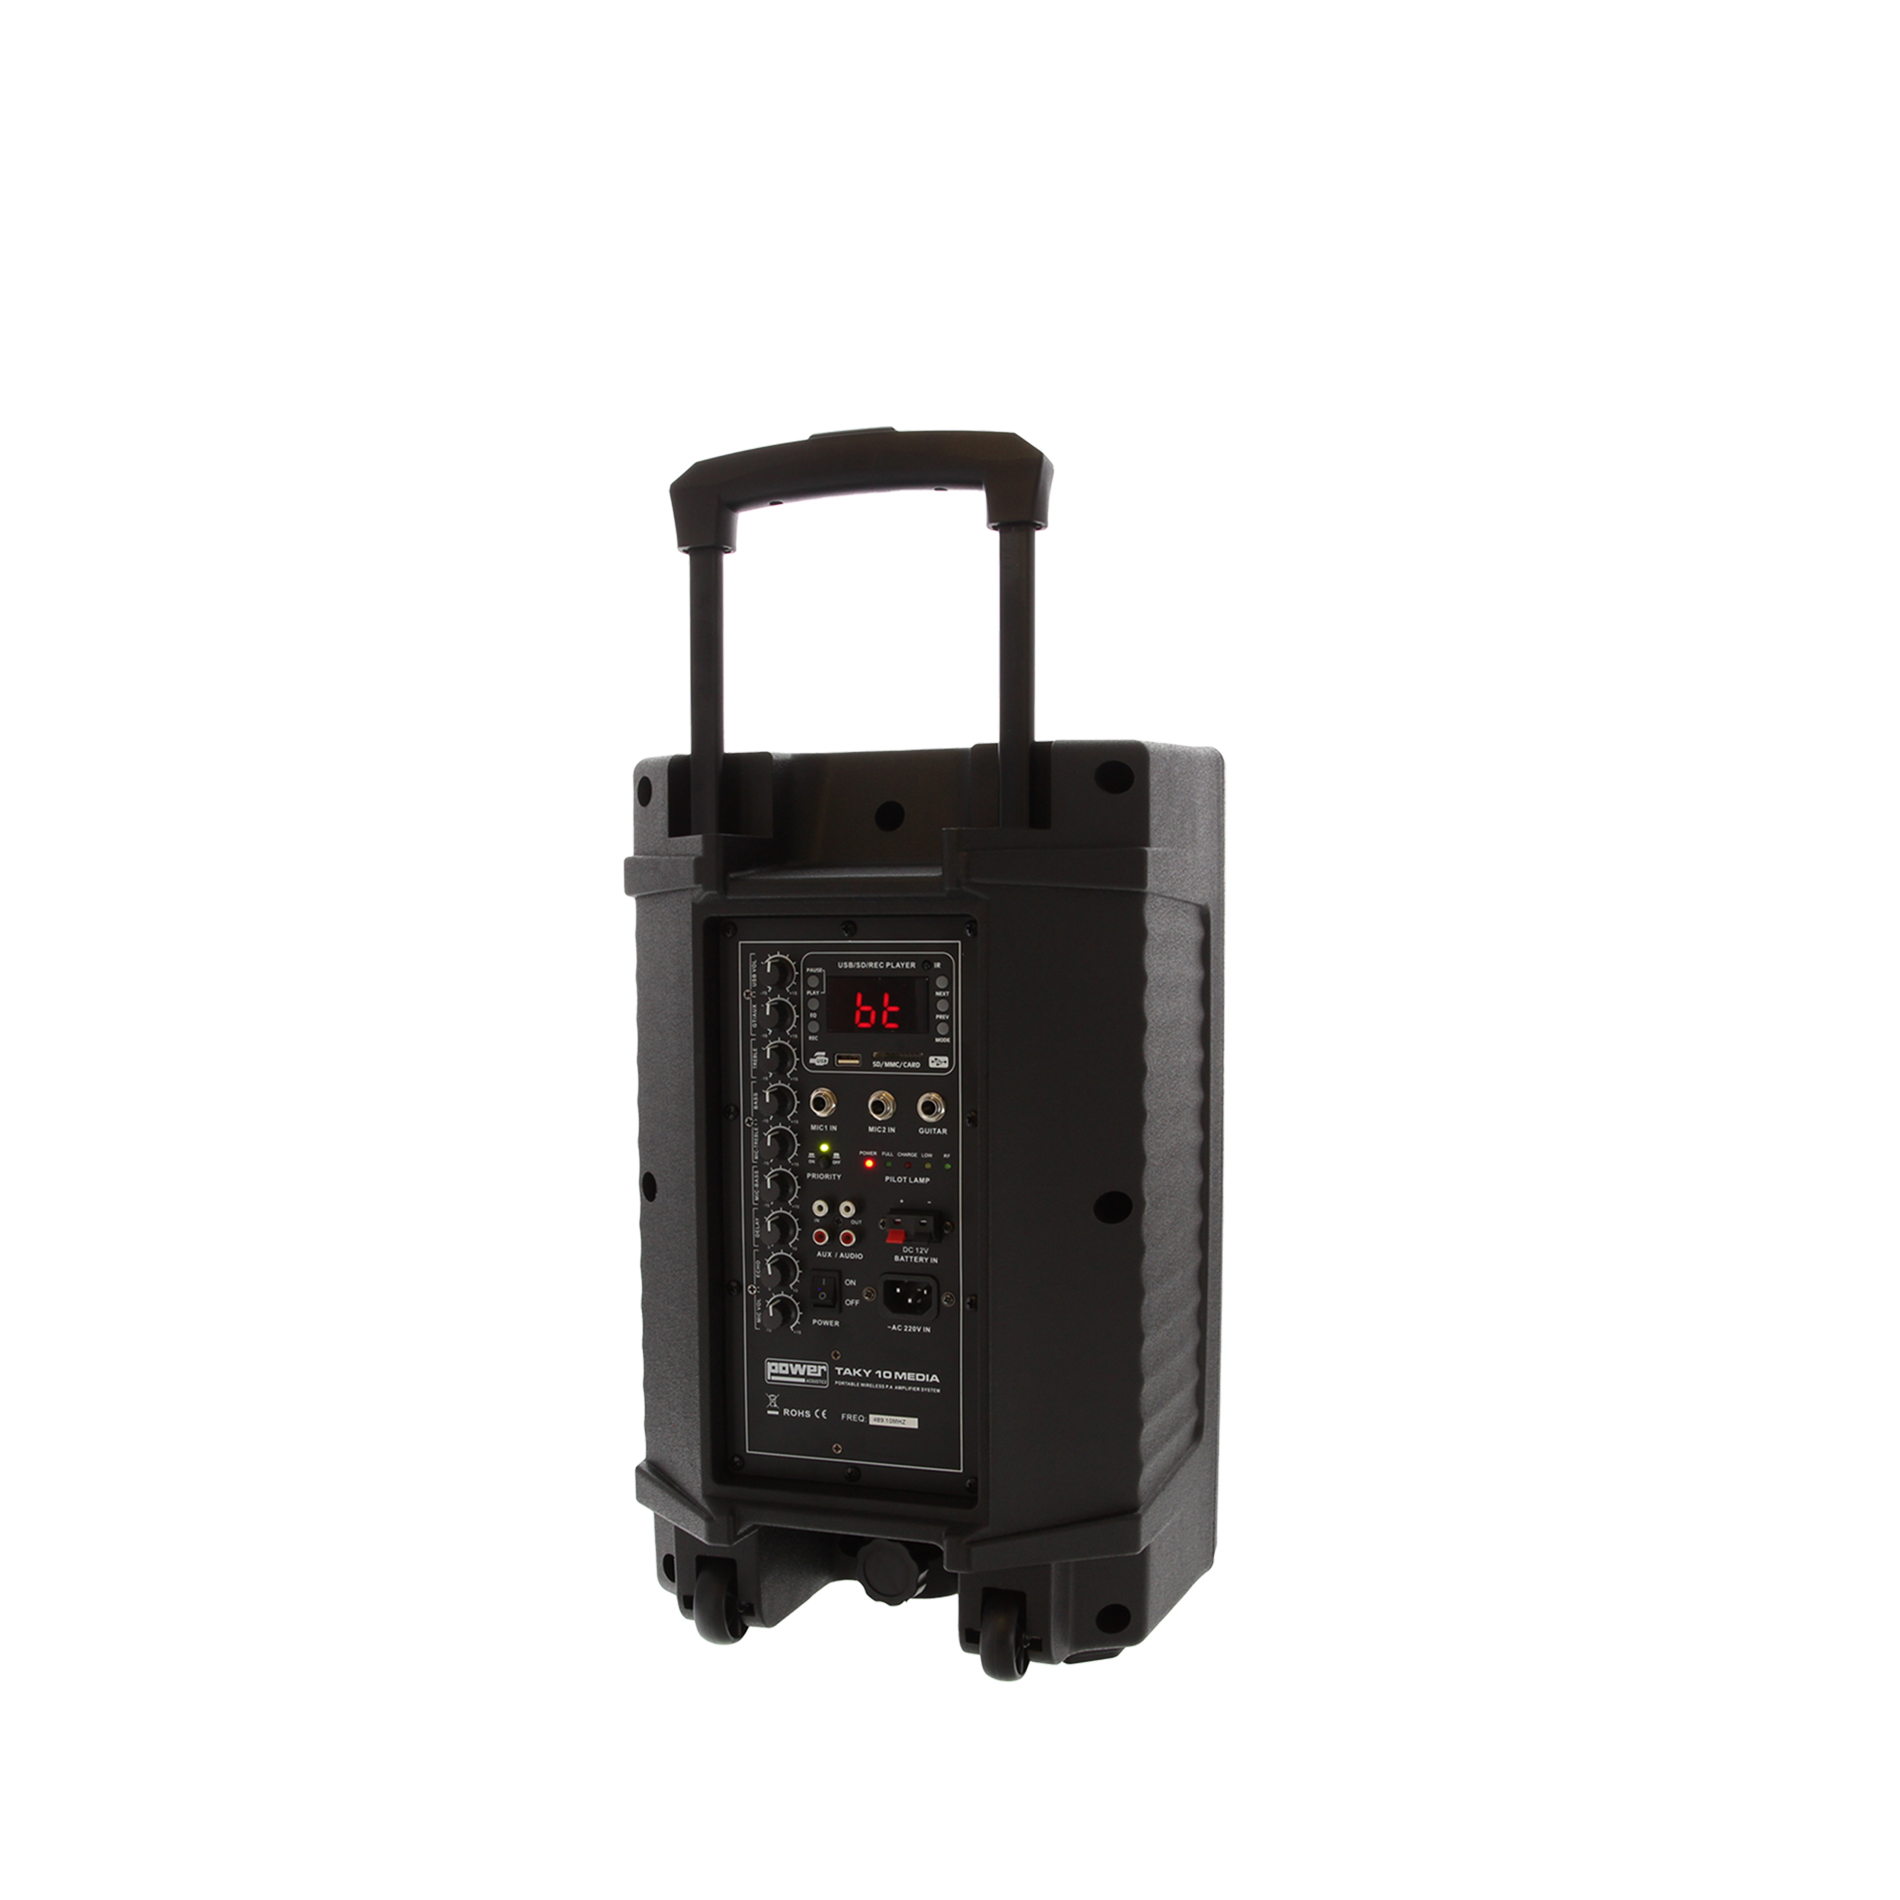 Power Acoustics Taky 10 Media - Sono Portable - Variation 4